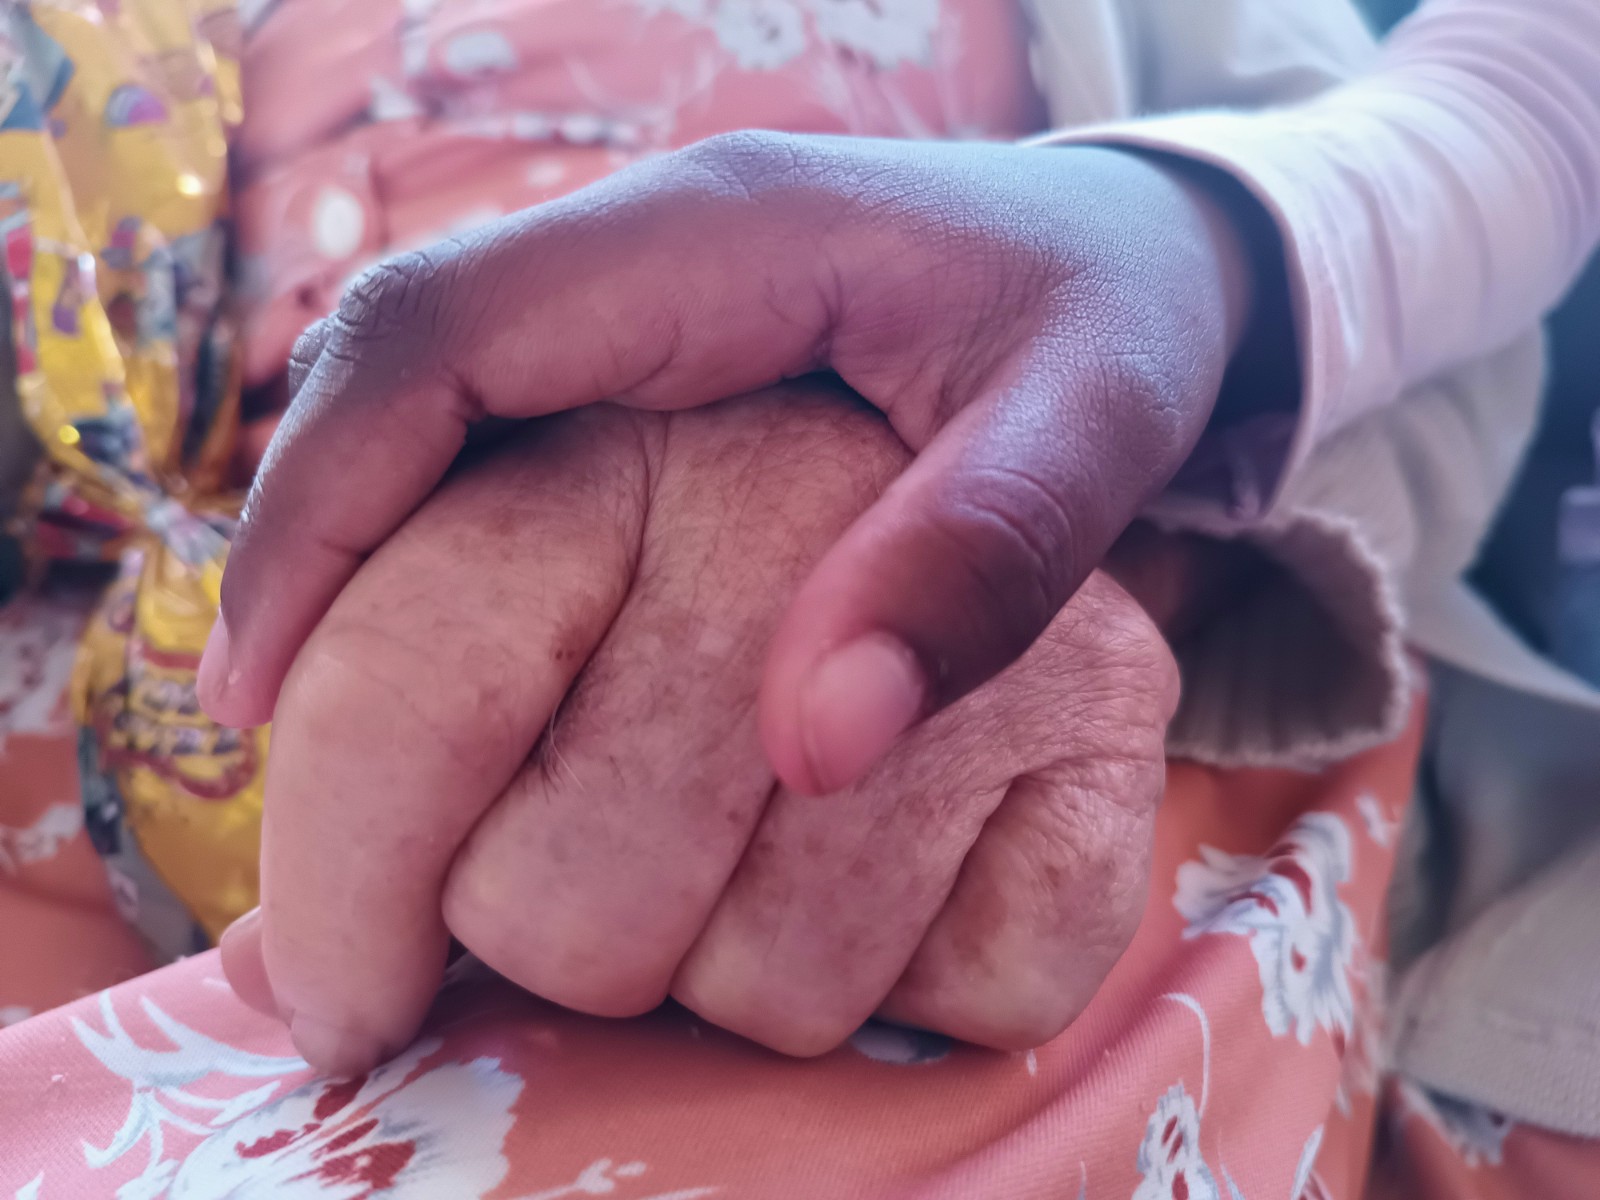 A foto ilustra a imagem da mão de uma pessoa idosa envolta pela mão de uma criança.